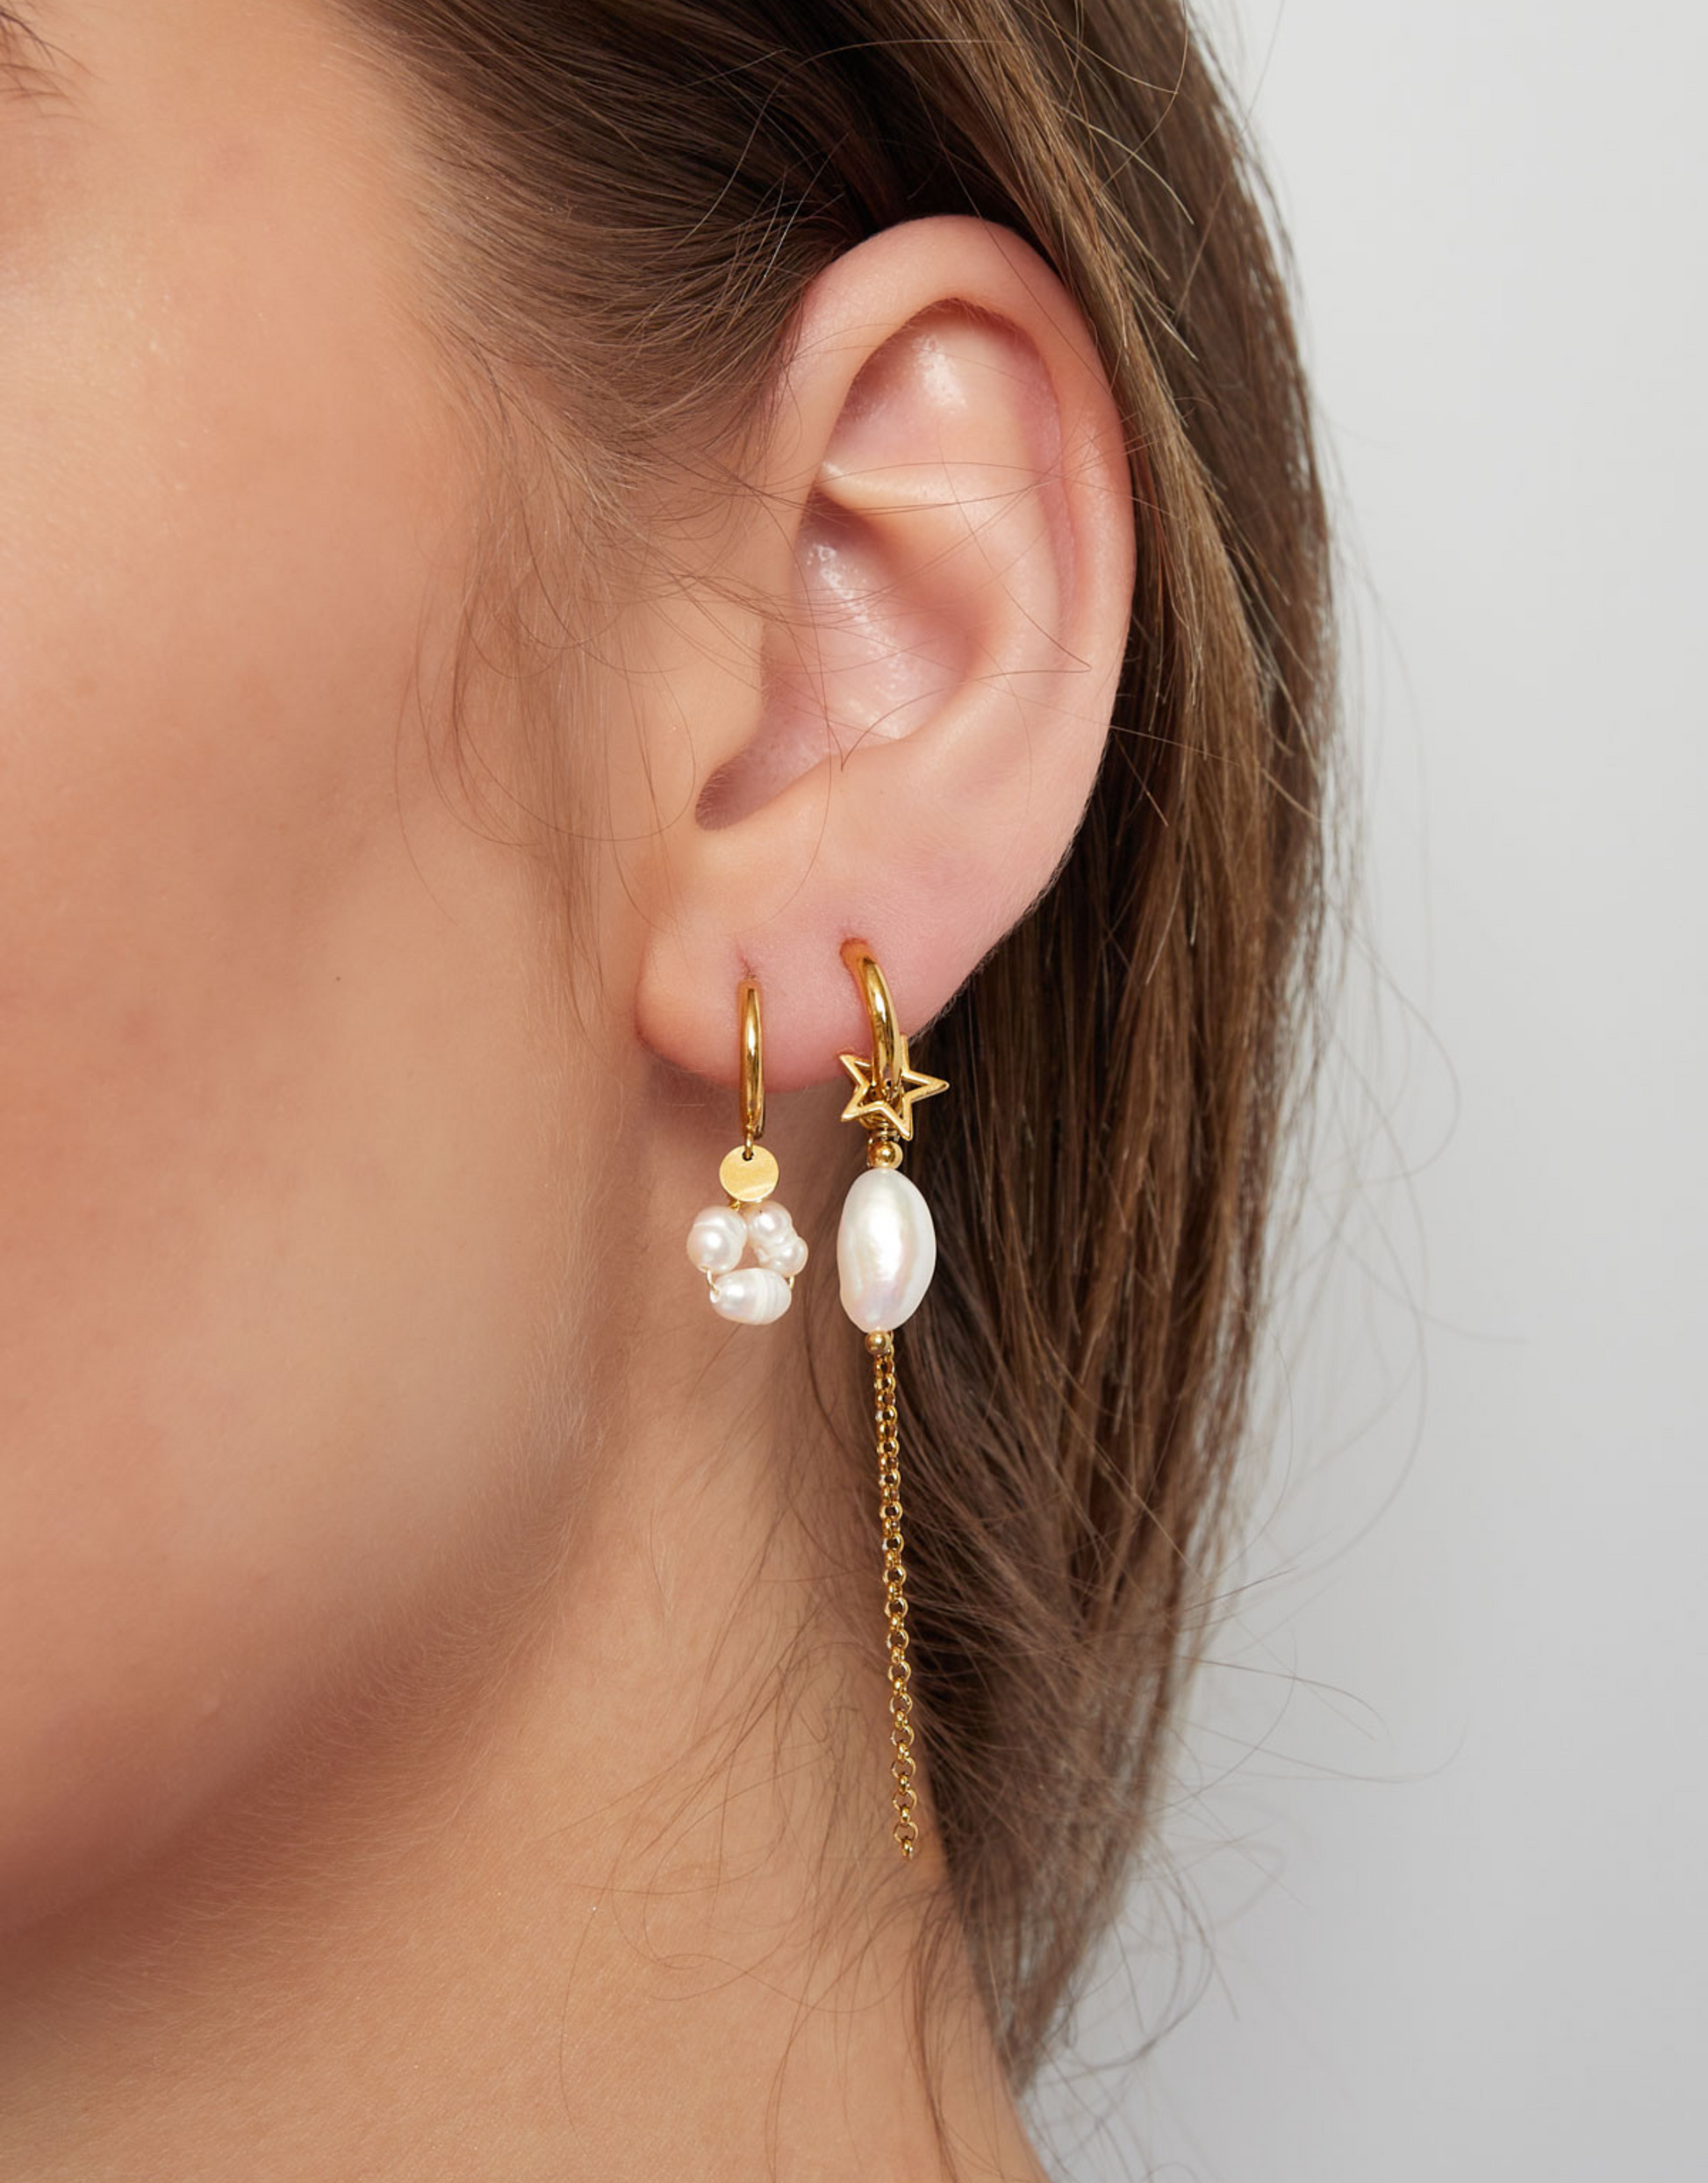 Unikke øreringe med det smukkeste vedhæng af ferskvandsperle og stjerne vedhæng.  Disse øreringe er til dig, der virkelig elsker, at spice dit look op med unikke smykker.  Materiale: Rustfri stål, 14 karat guldbelægning. 100% nikkelfri Størrelse: 1.2 x 6.3 cm